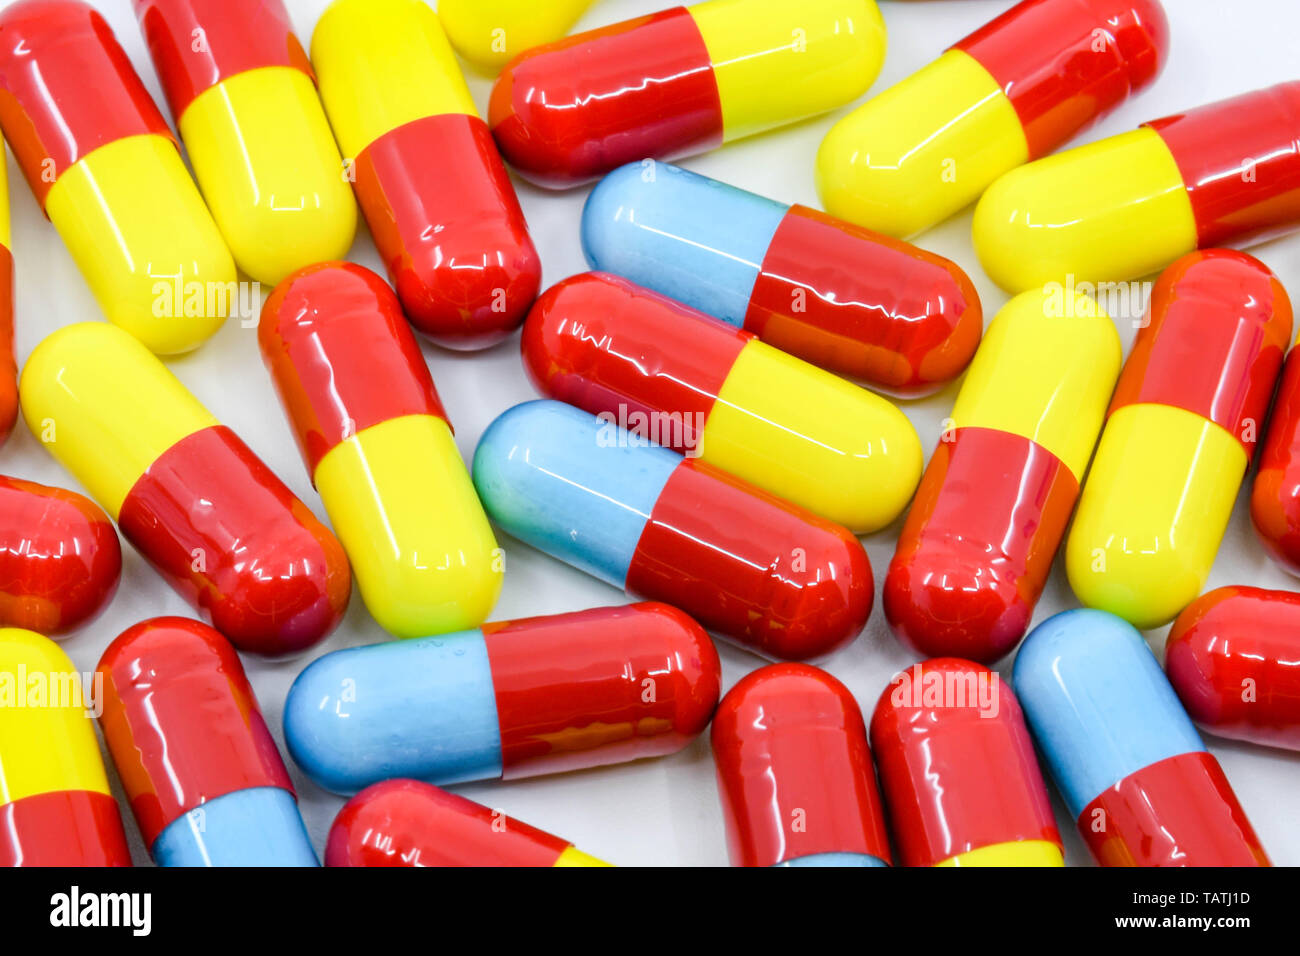 CARDIFF, WALES - Mai 2019 : capsules colorées de médicament contre le rhume et la grippe Banque D'Images